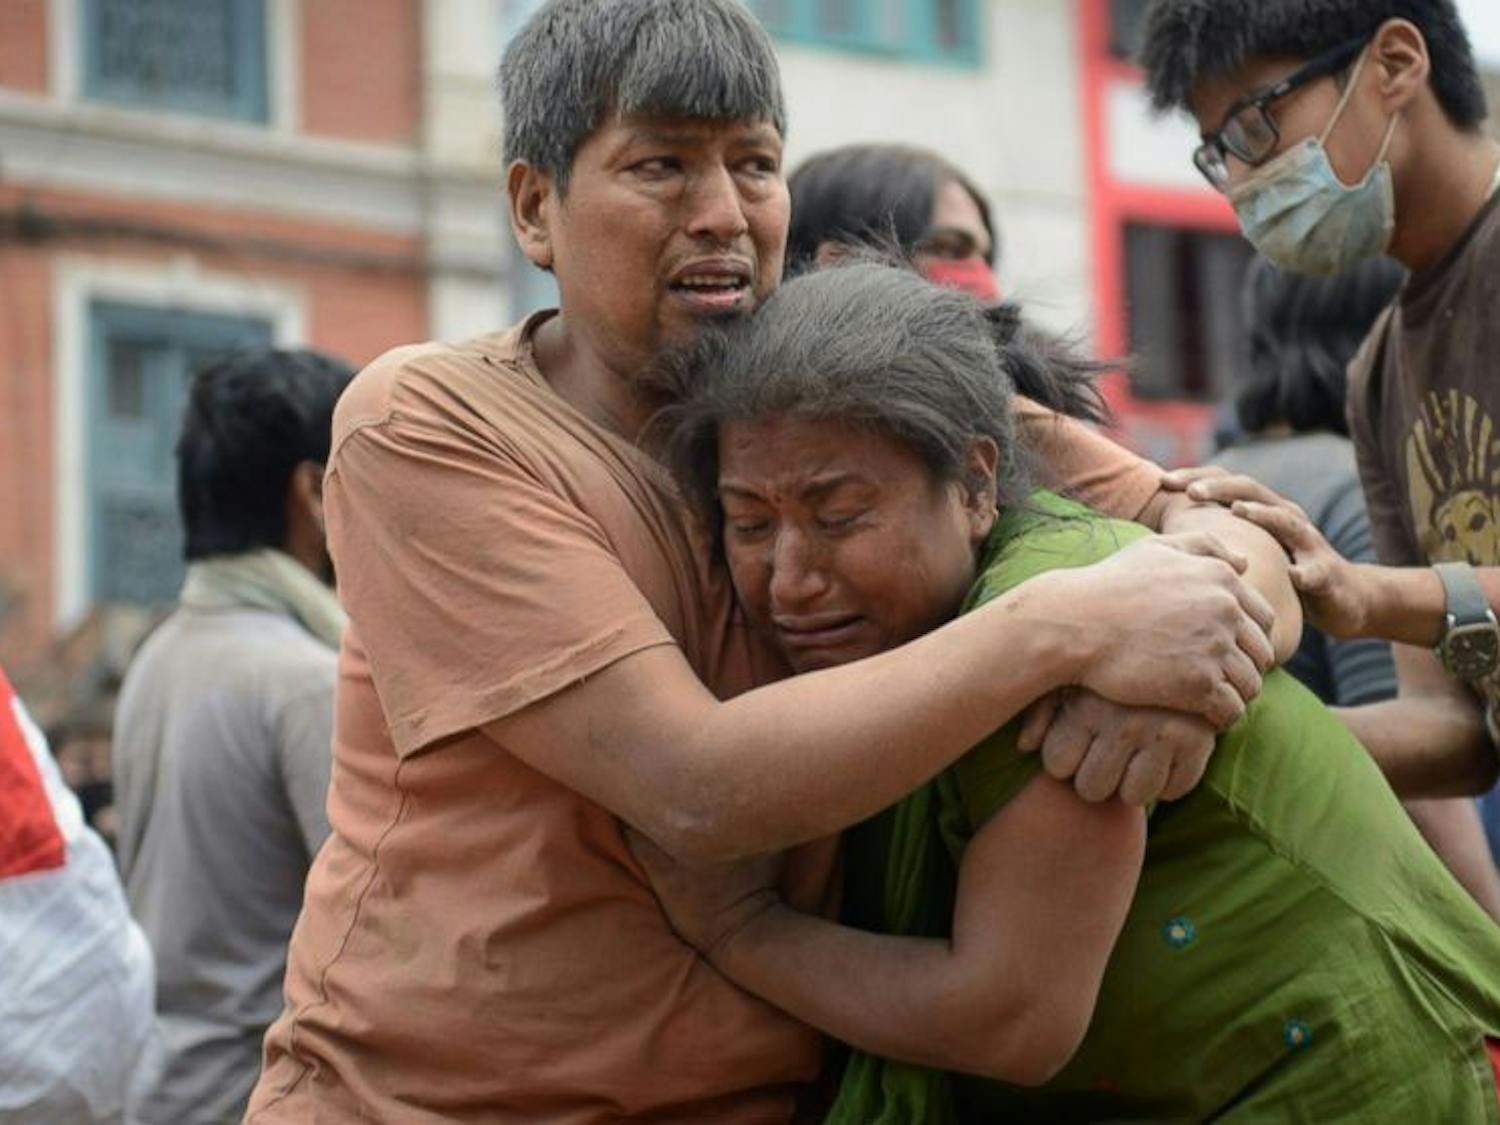 GTY_nepal_earthquake_6_jt_150425_1_16x9_992.jpg